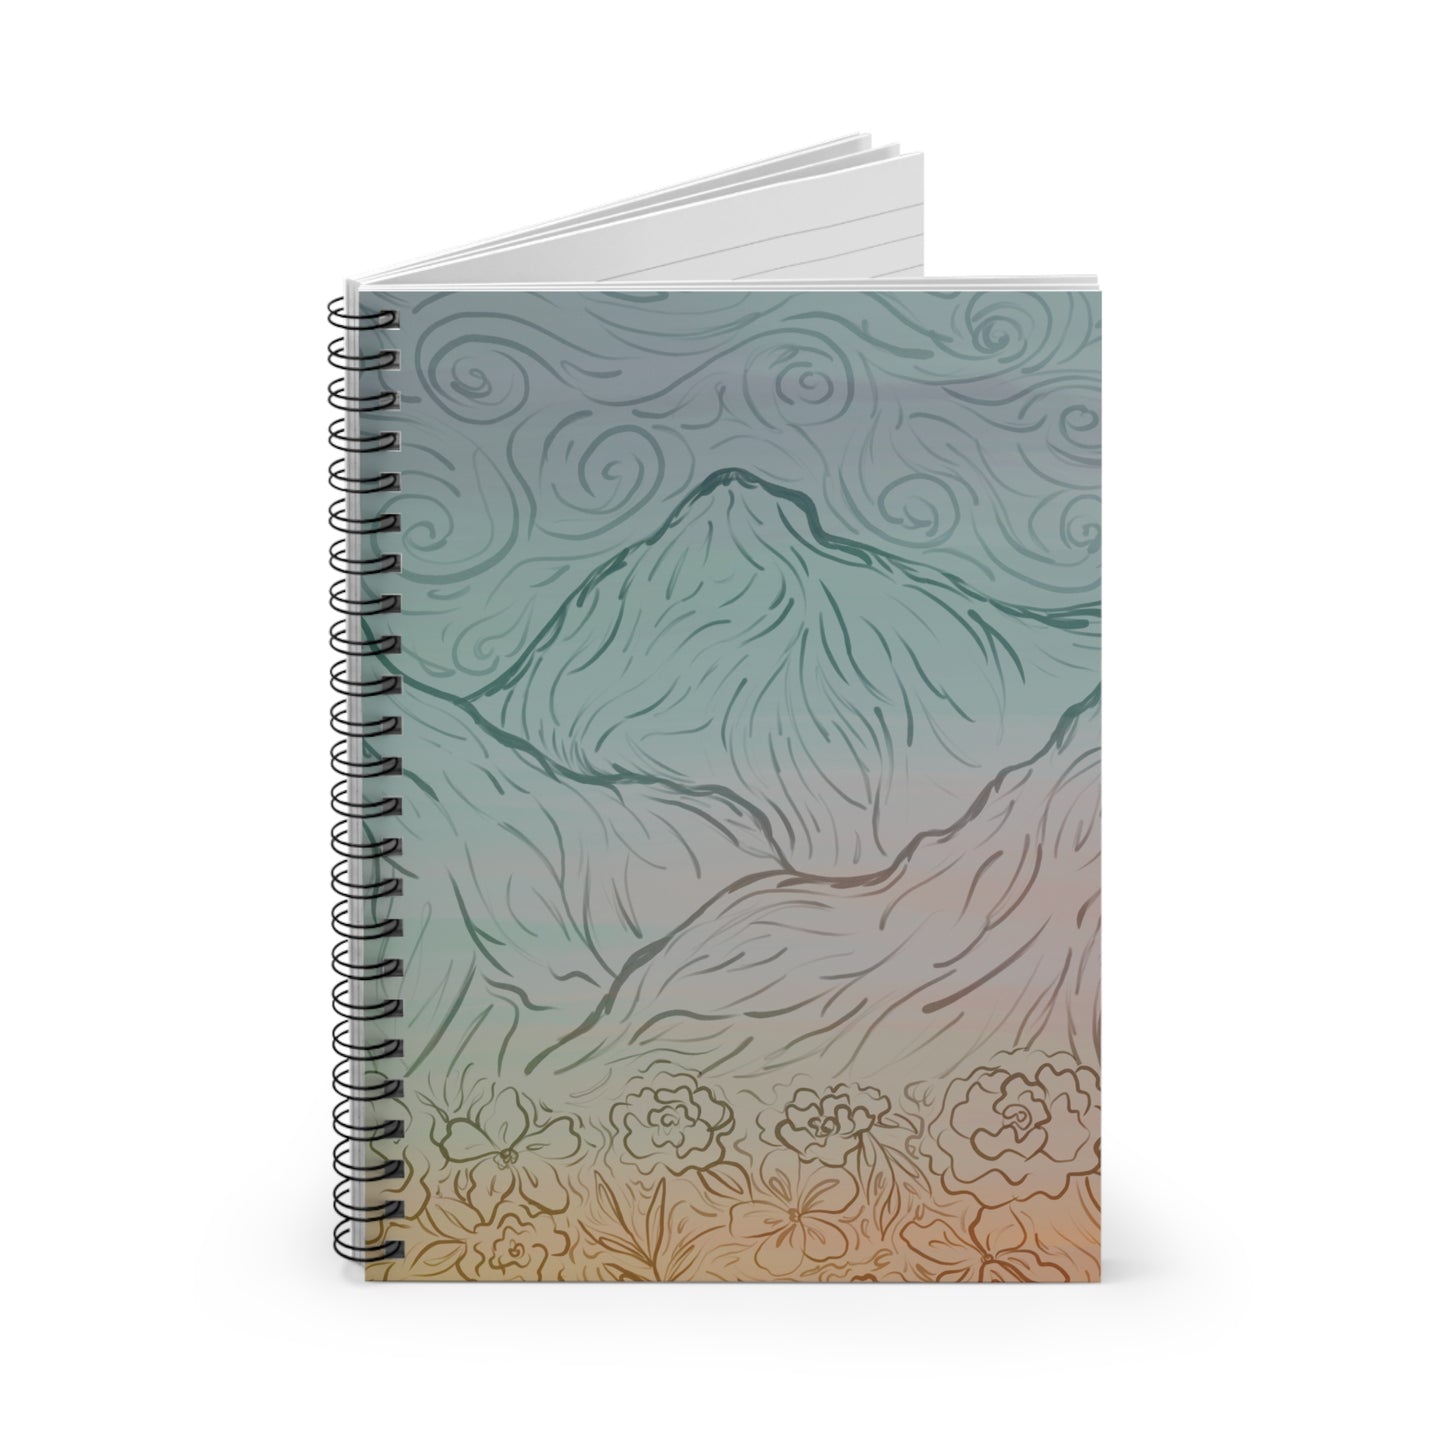 Ombré mountain notebook